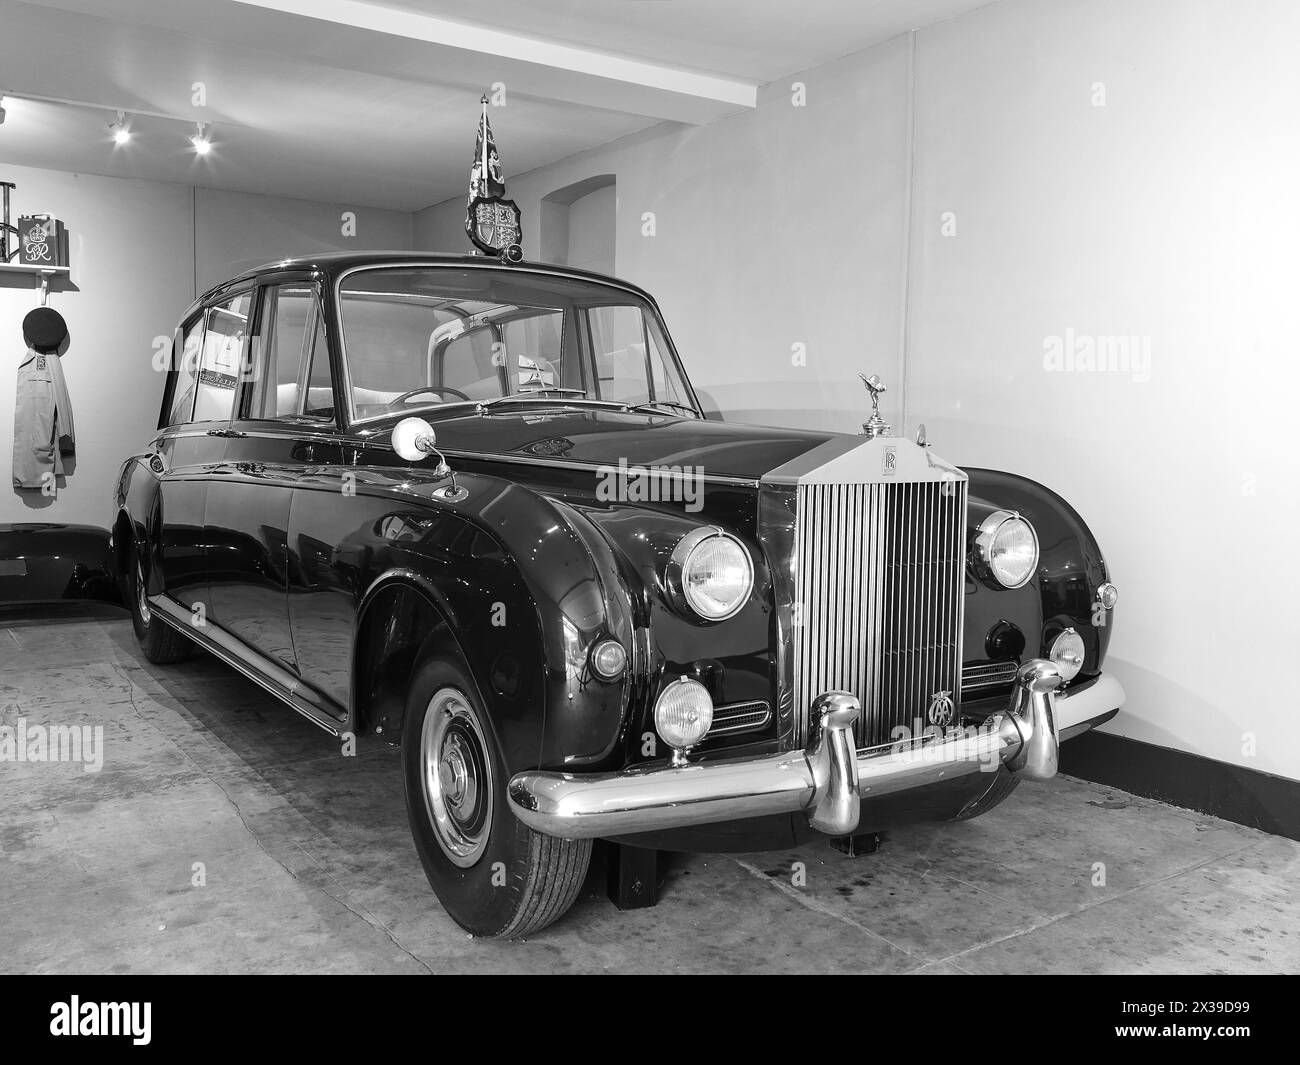 Rolls Royce Phantom, usata dalla regina Elisabetta II dal 1961 al 2002, in un garage presso la residenza di campagna del monarca britannico, Sandringham House. Foto Stock